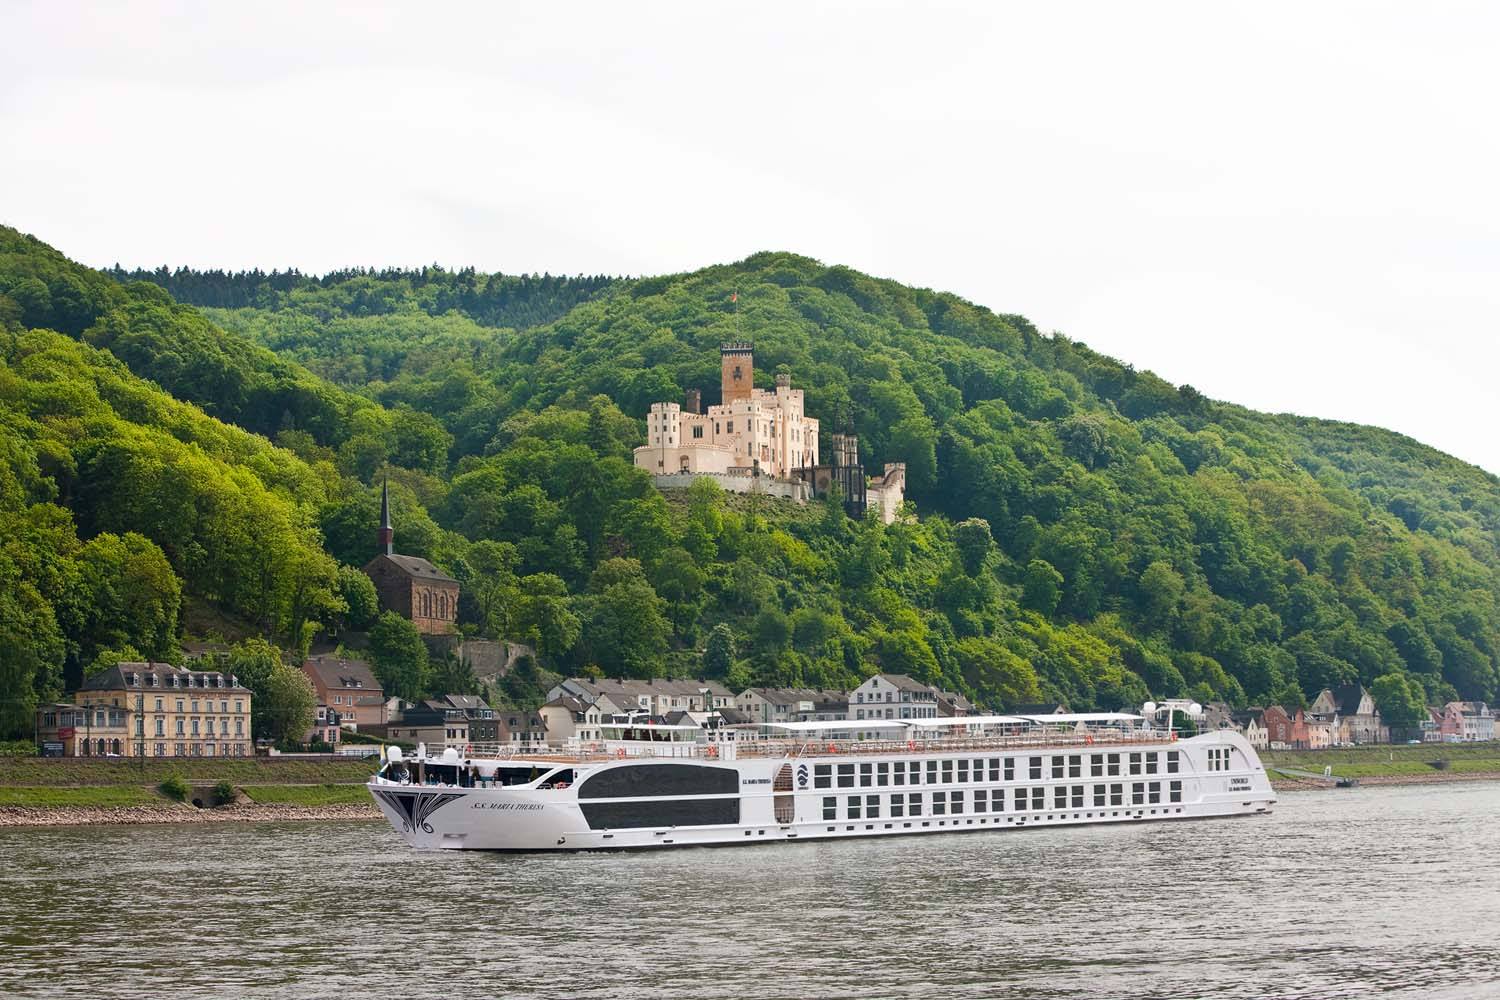 ภาพรวมการล่องเรือแม่น้ำ Uniworld River Cruises : เที่ยวหรูหรา โรแมนติคกลางสายน้ำในยุโรป และแม่น้ำสายหลักรอบโลก